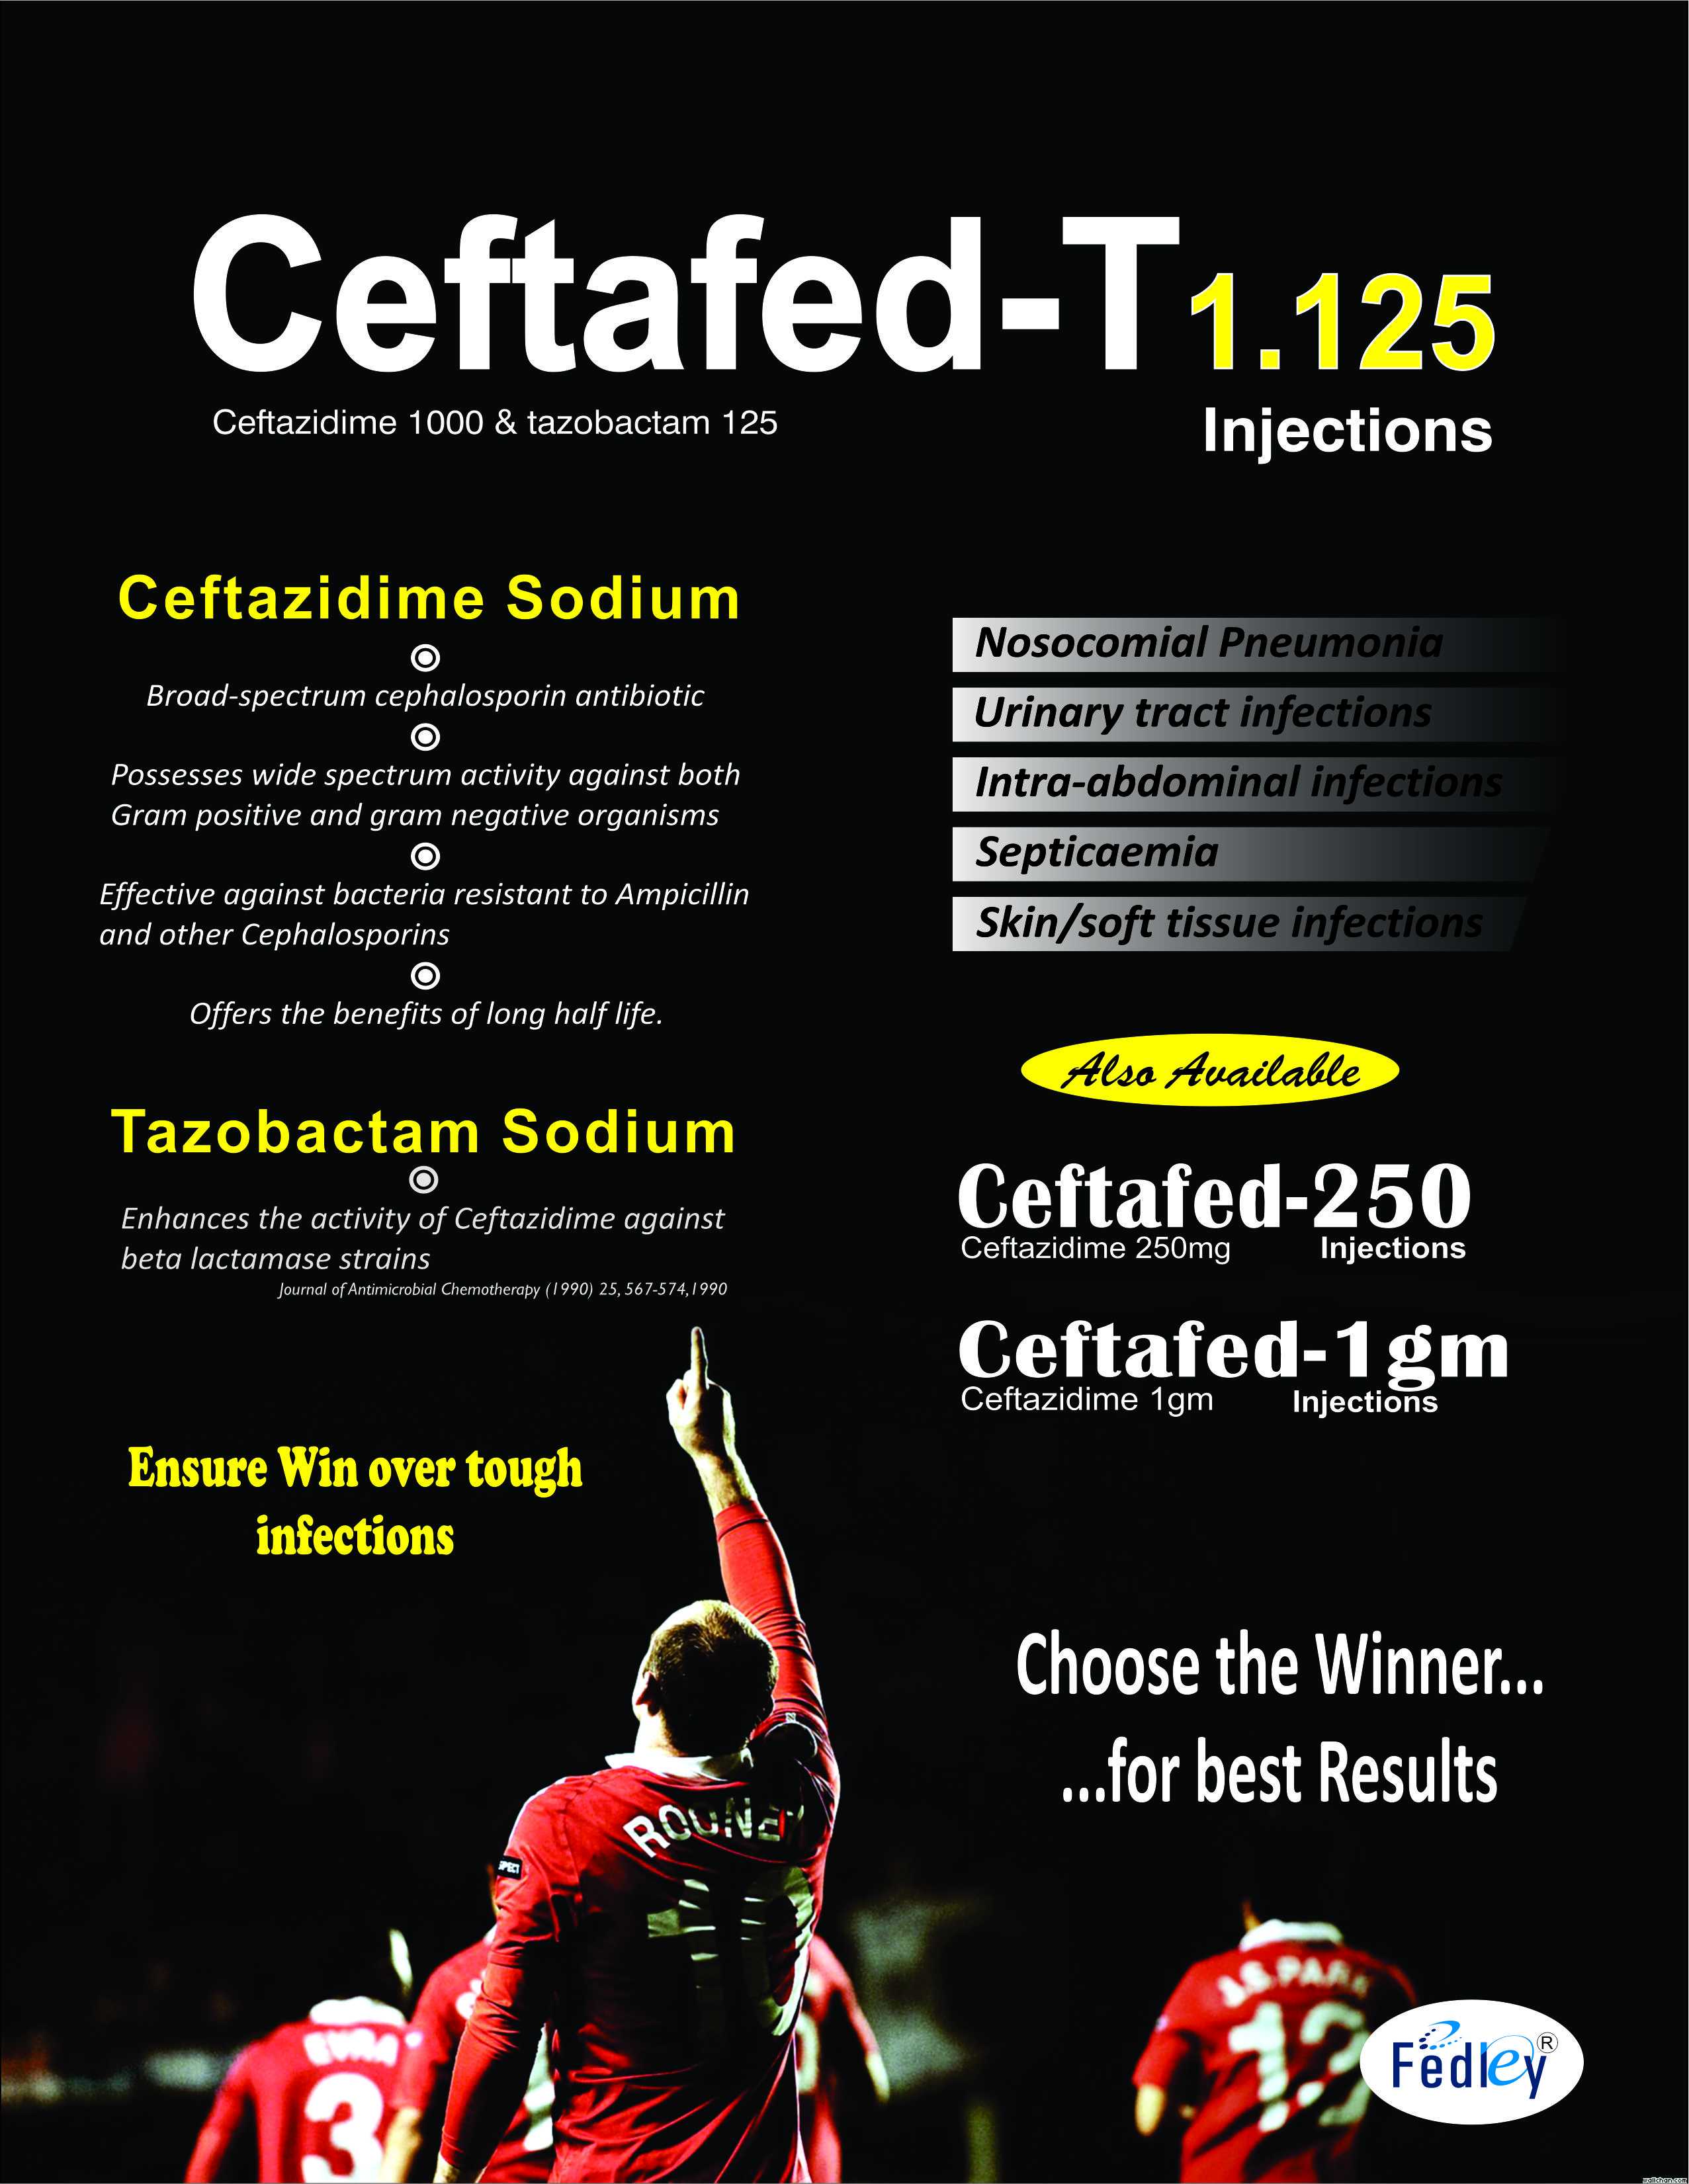 CEFTAFED-T 1.125